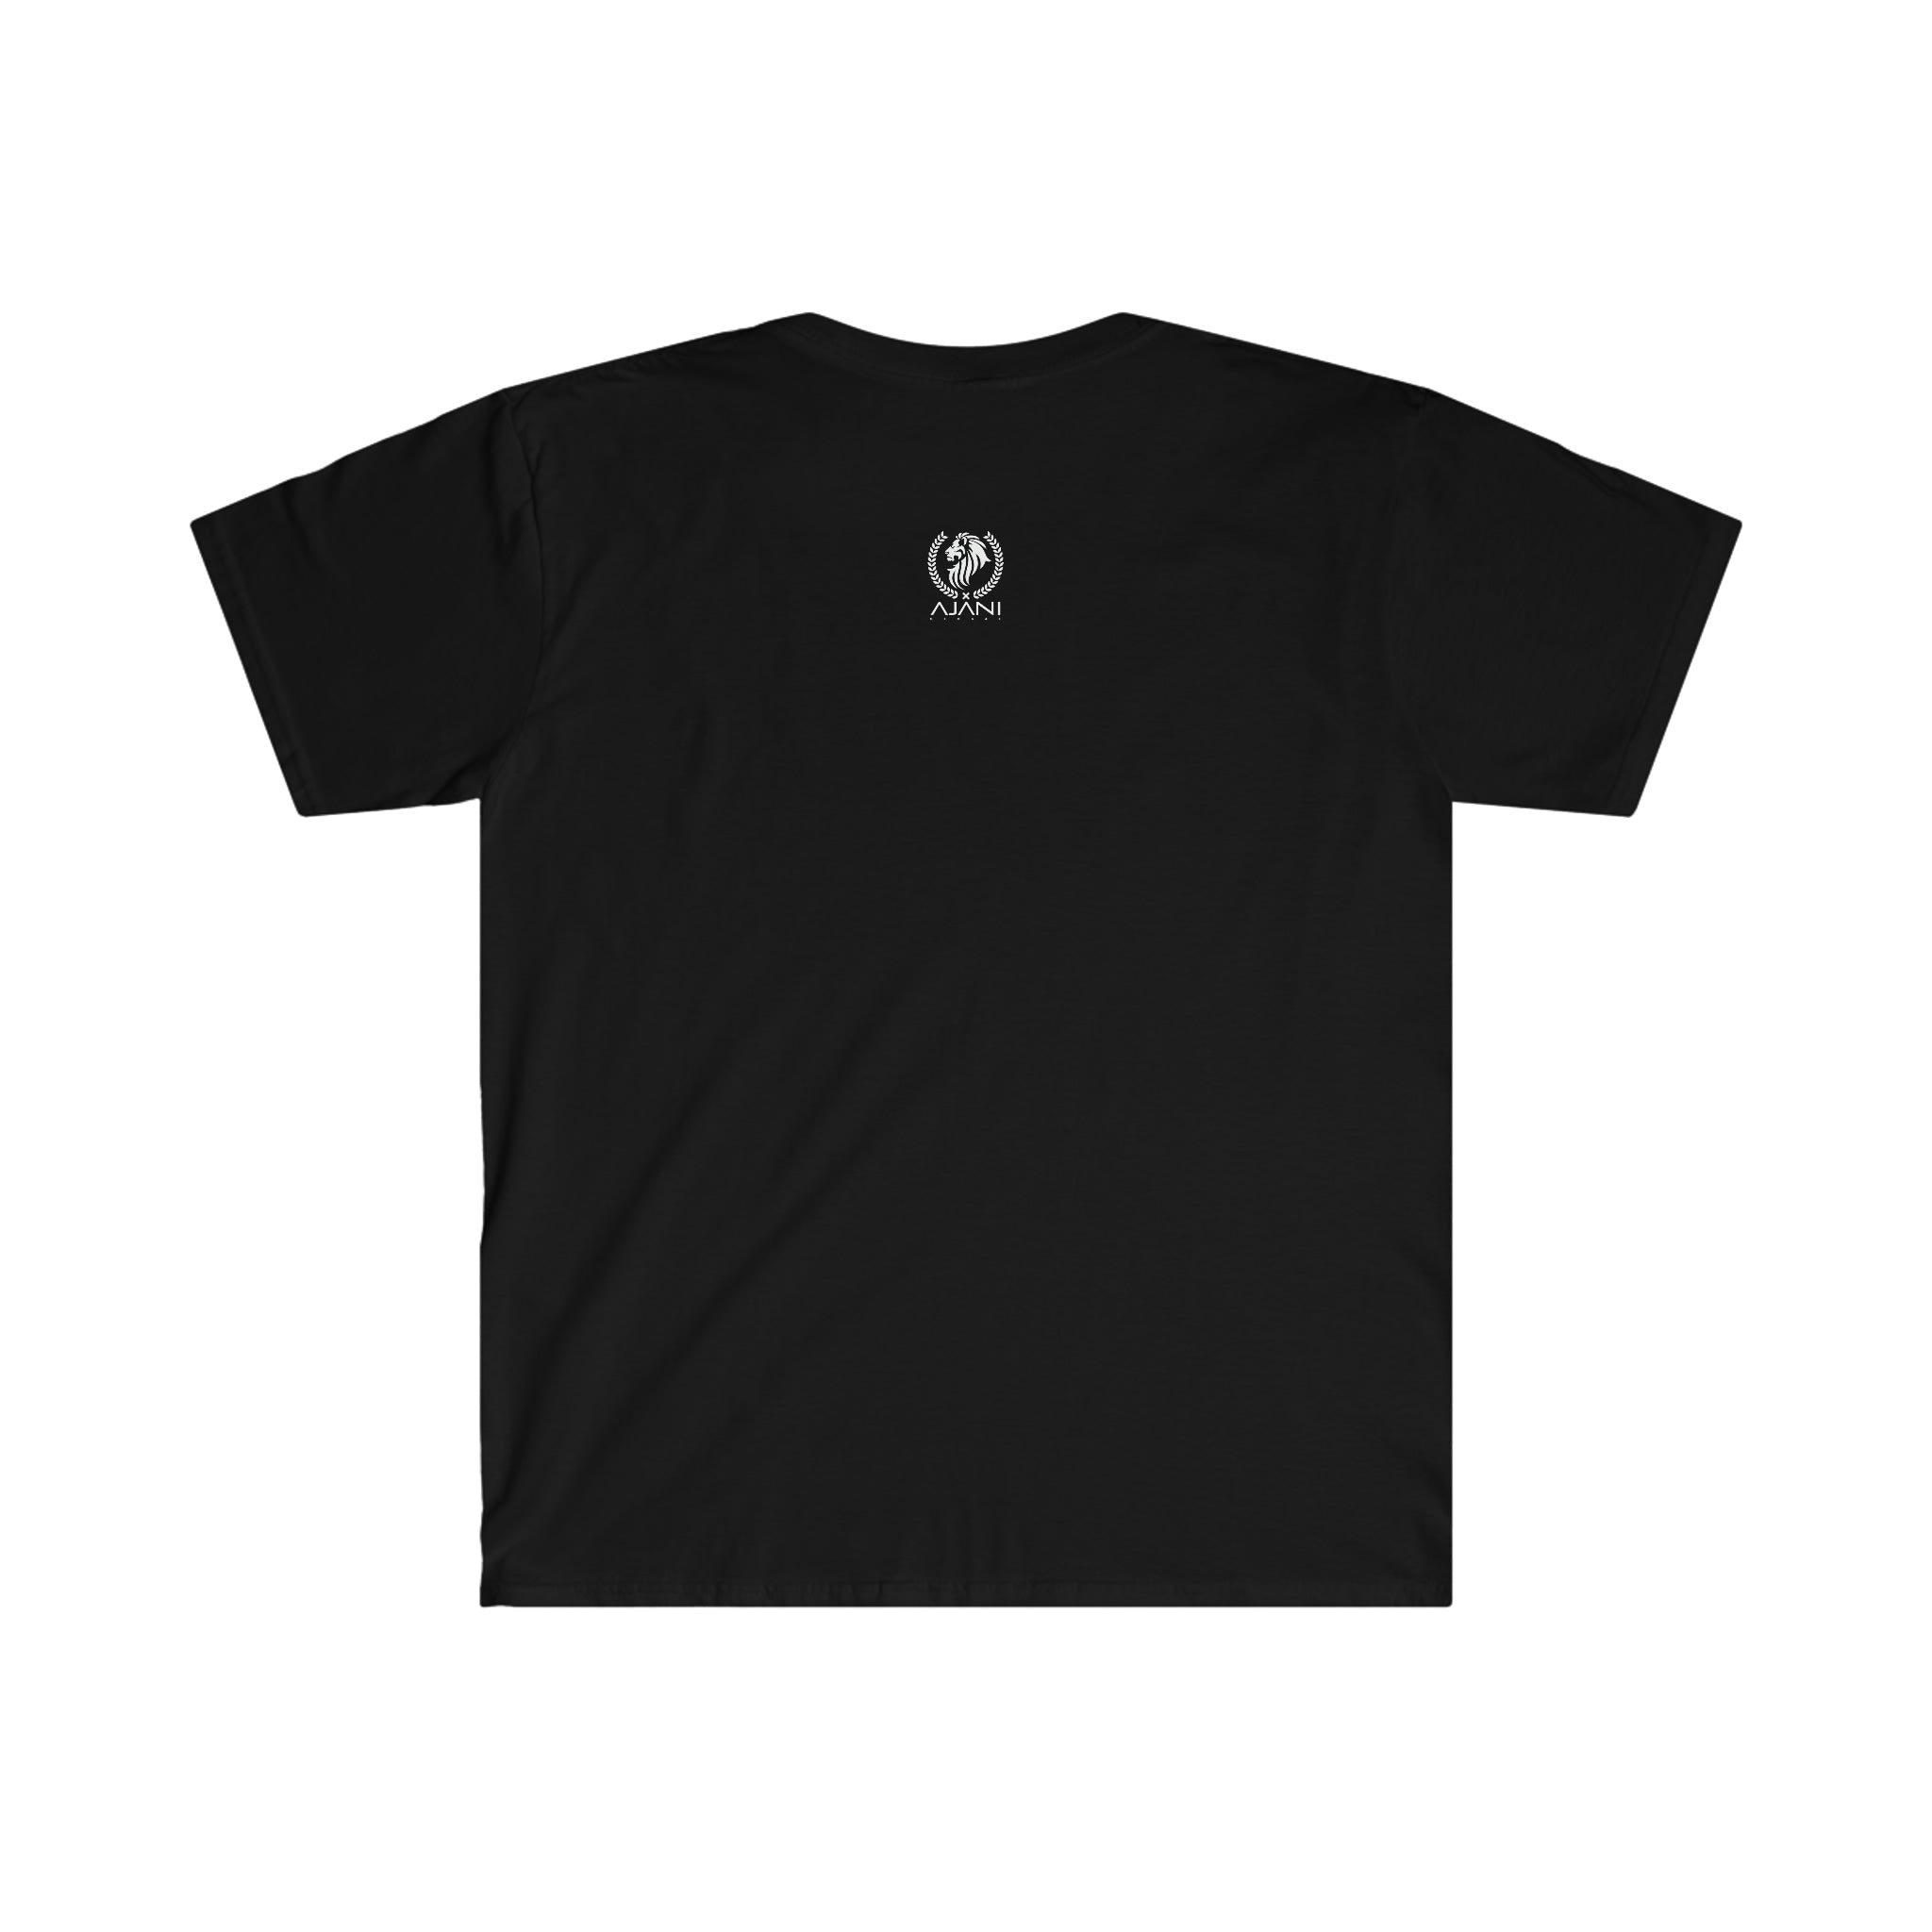 Titan Exposed Unisex T-Shirt